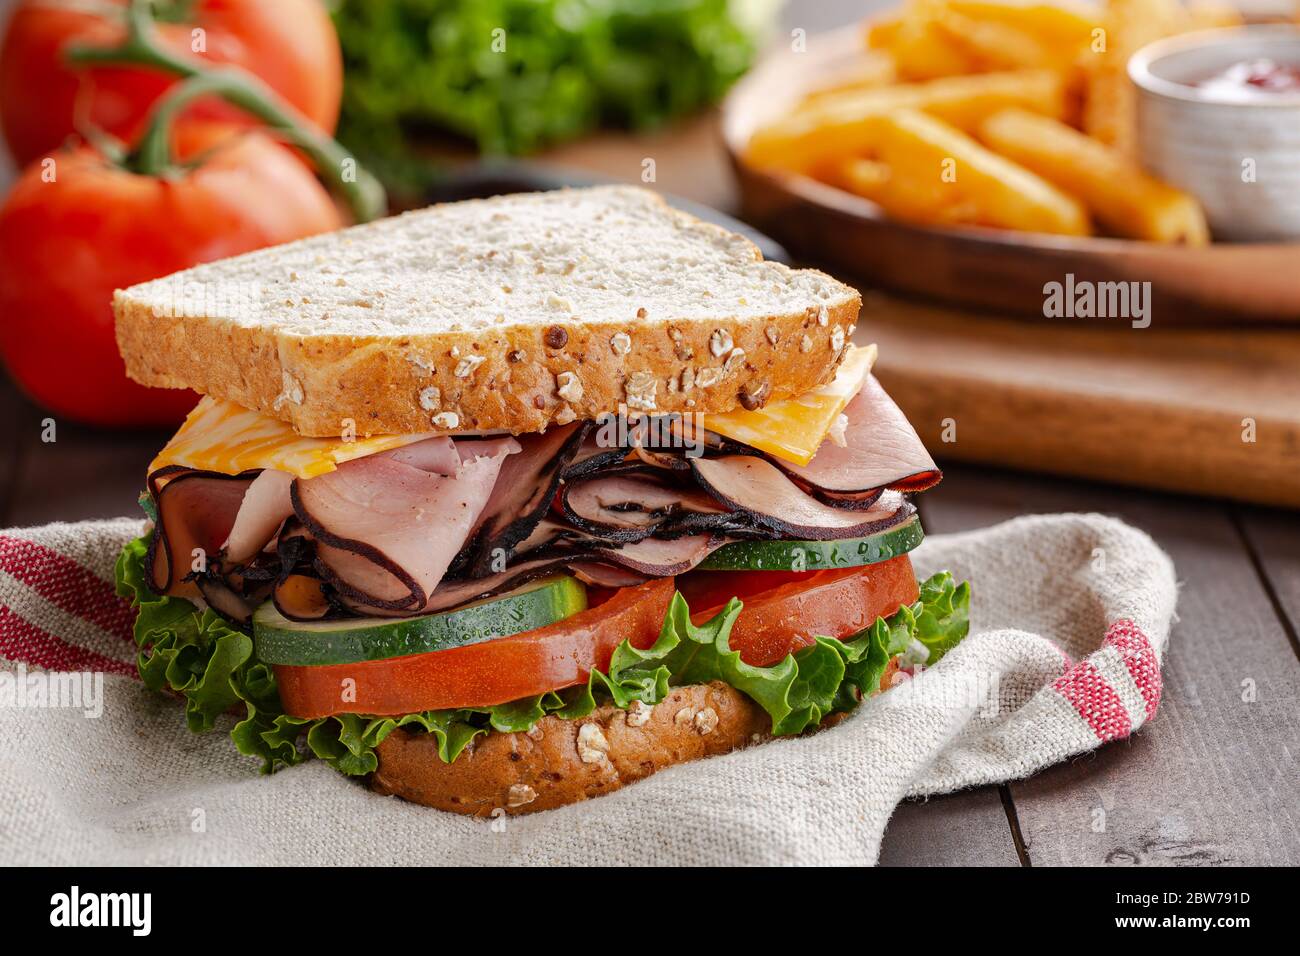 Nahaufnahme eines Schinken-Käse-Sandwich mit Salat, Tomaten und Gurken auf Vollkornbrot auf einem Holztisch Stockfoto